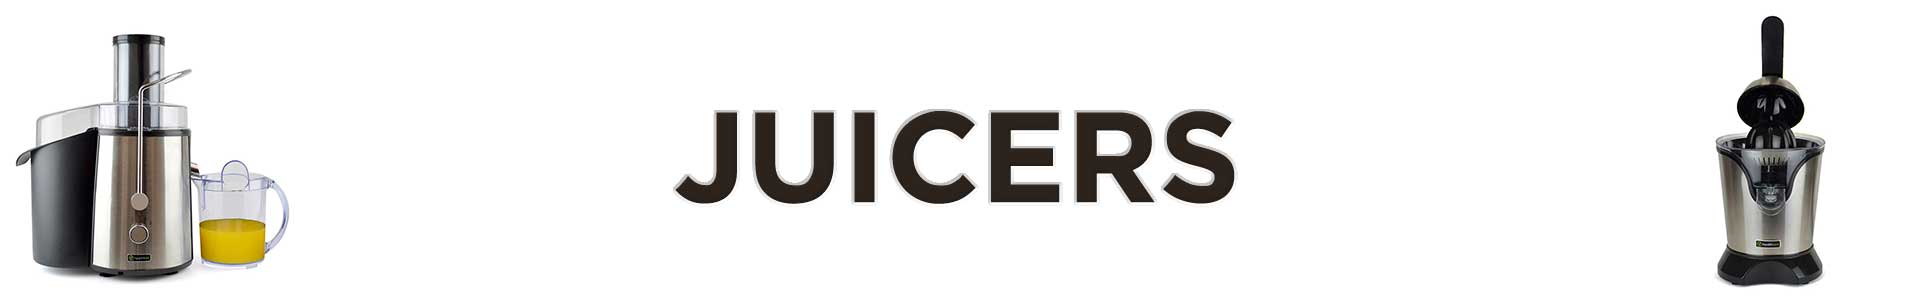 Juicers